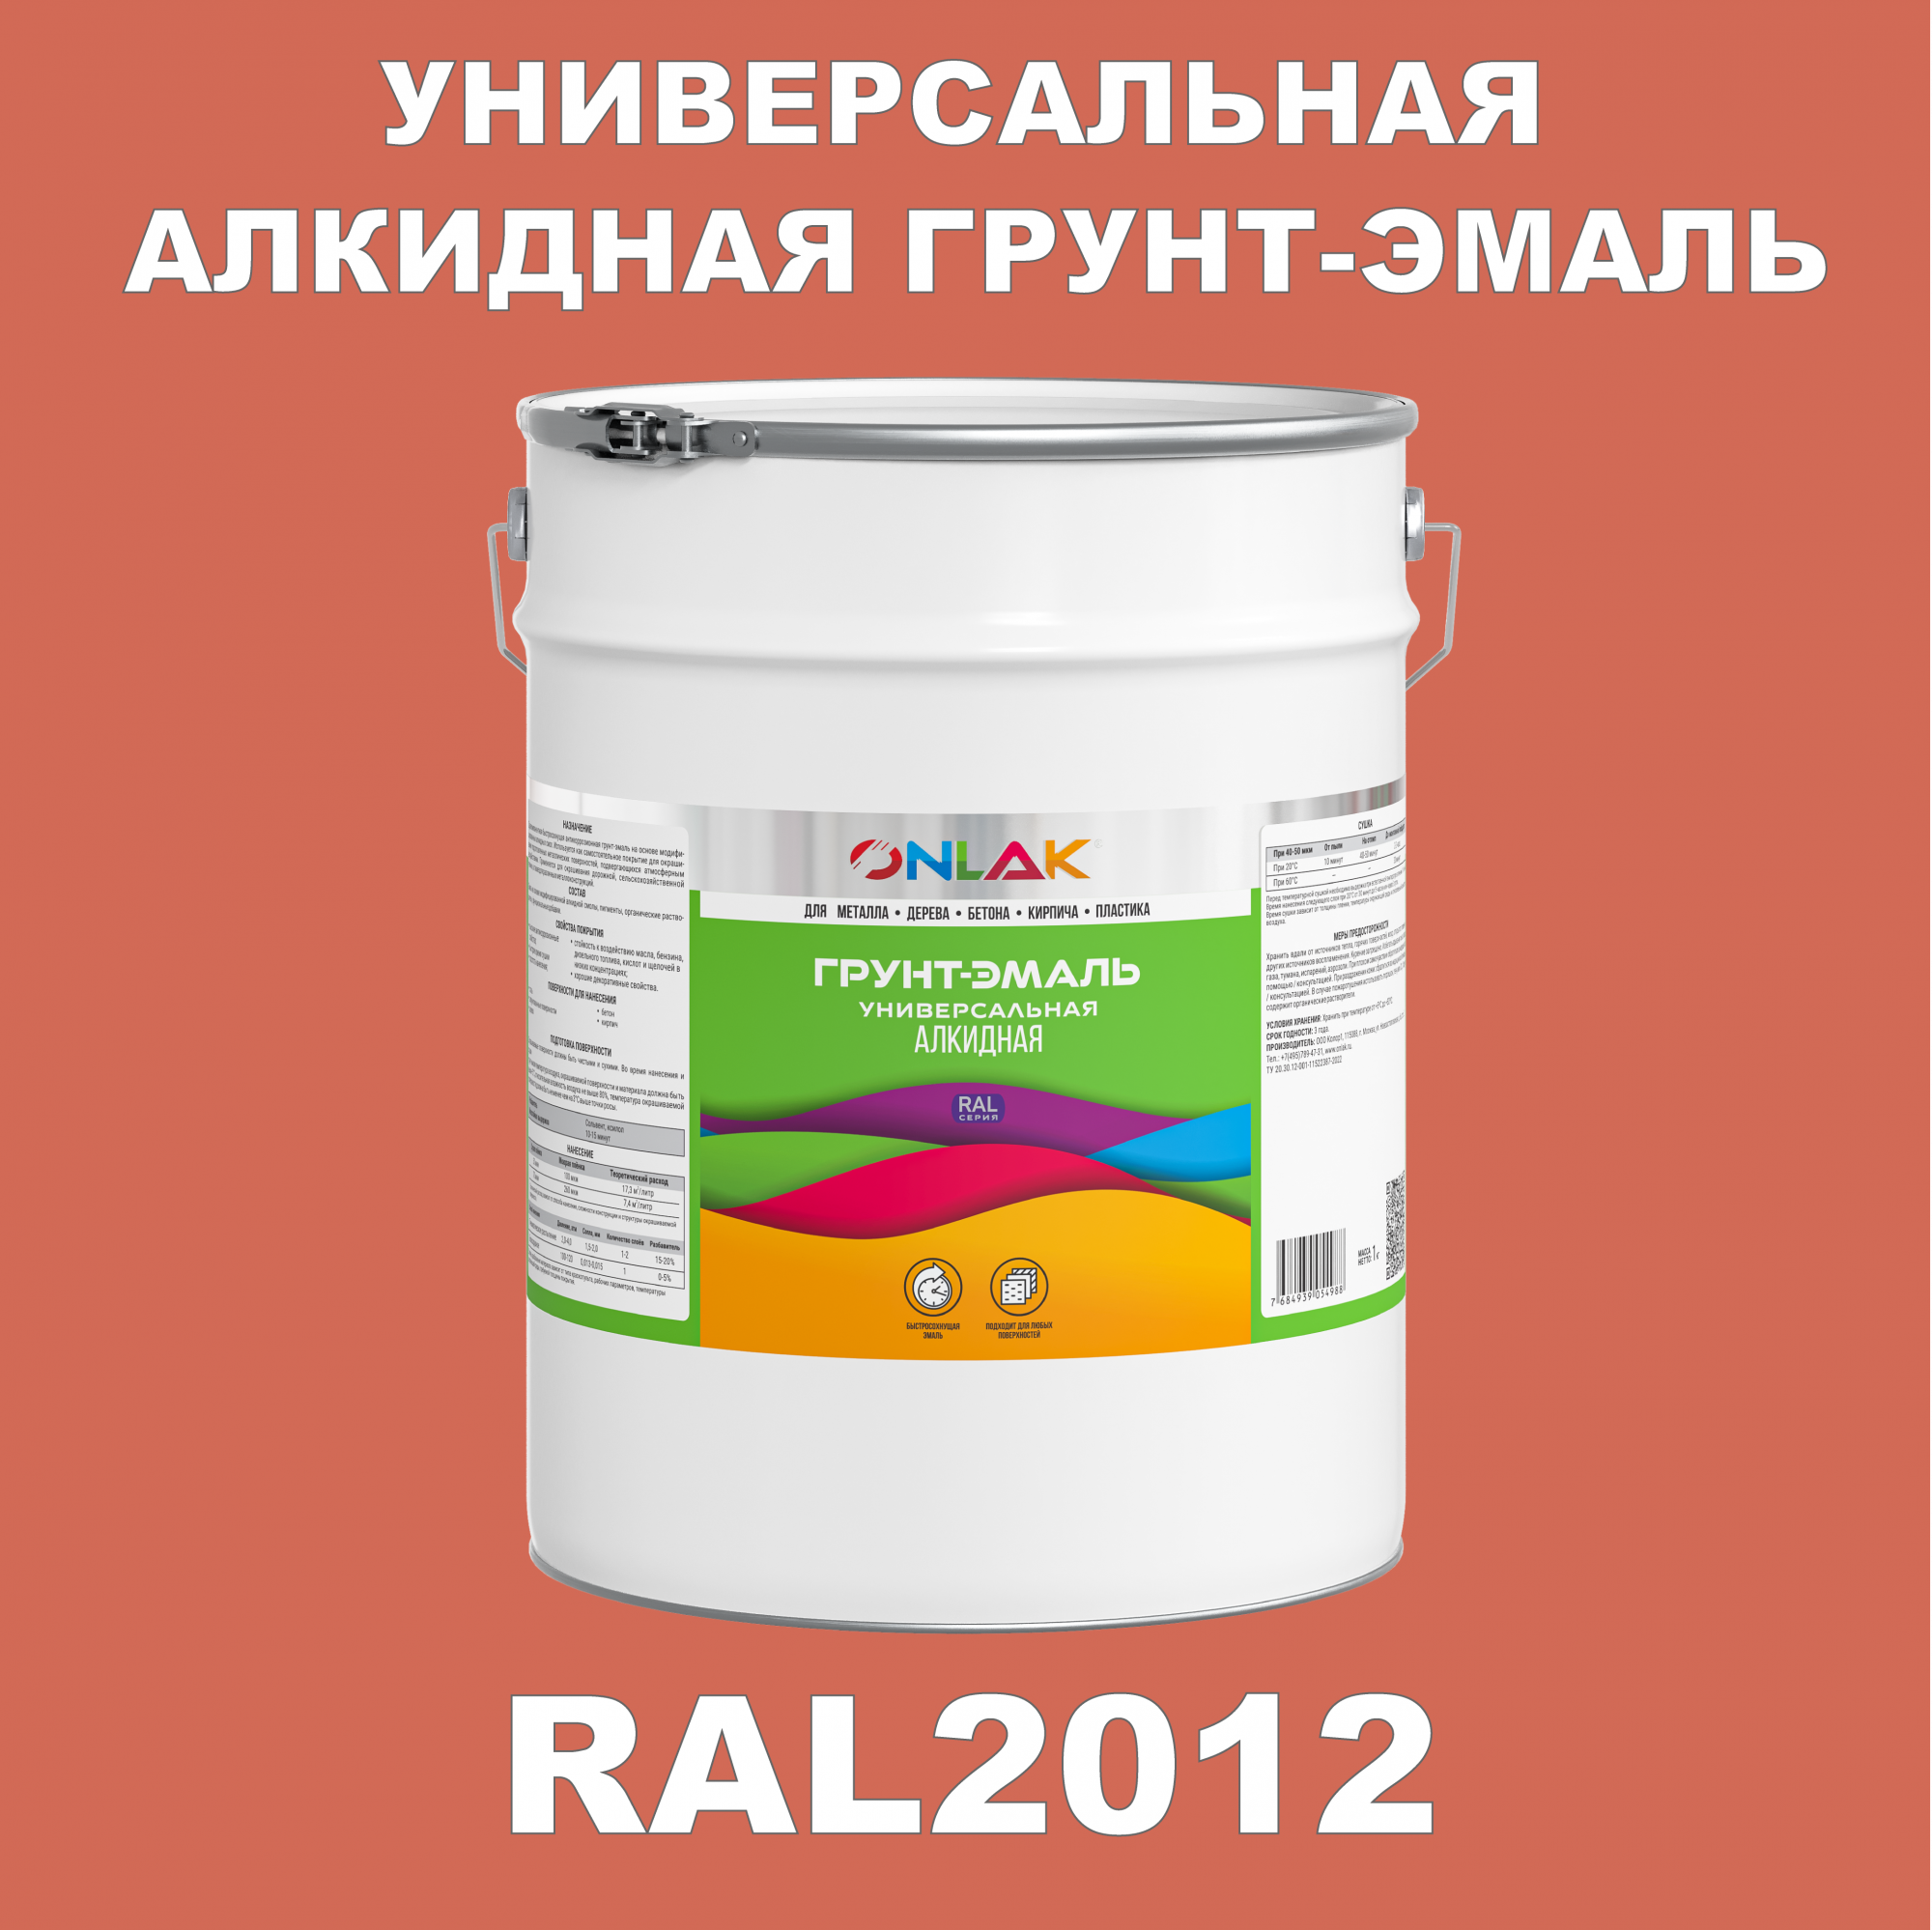 Грунт-эмаль ONLAK 1К RAL2012 антикоррозионная алкидная по металлу по ржавчине 20 кг грунт эмаль yollo по ржавчине алкидная зеленая 0 9 кг